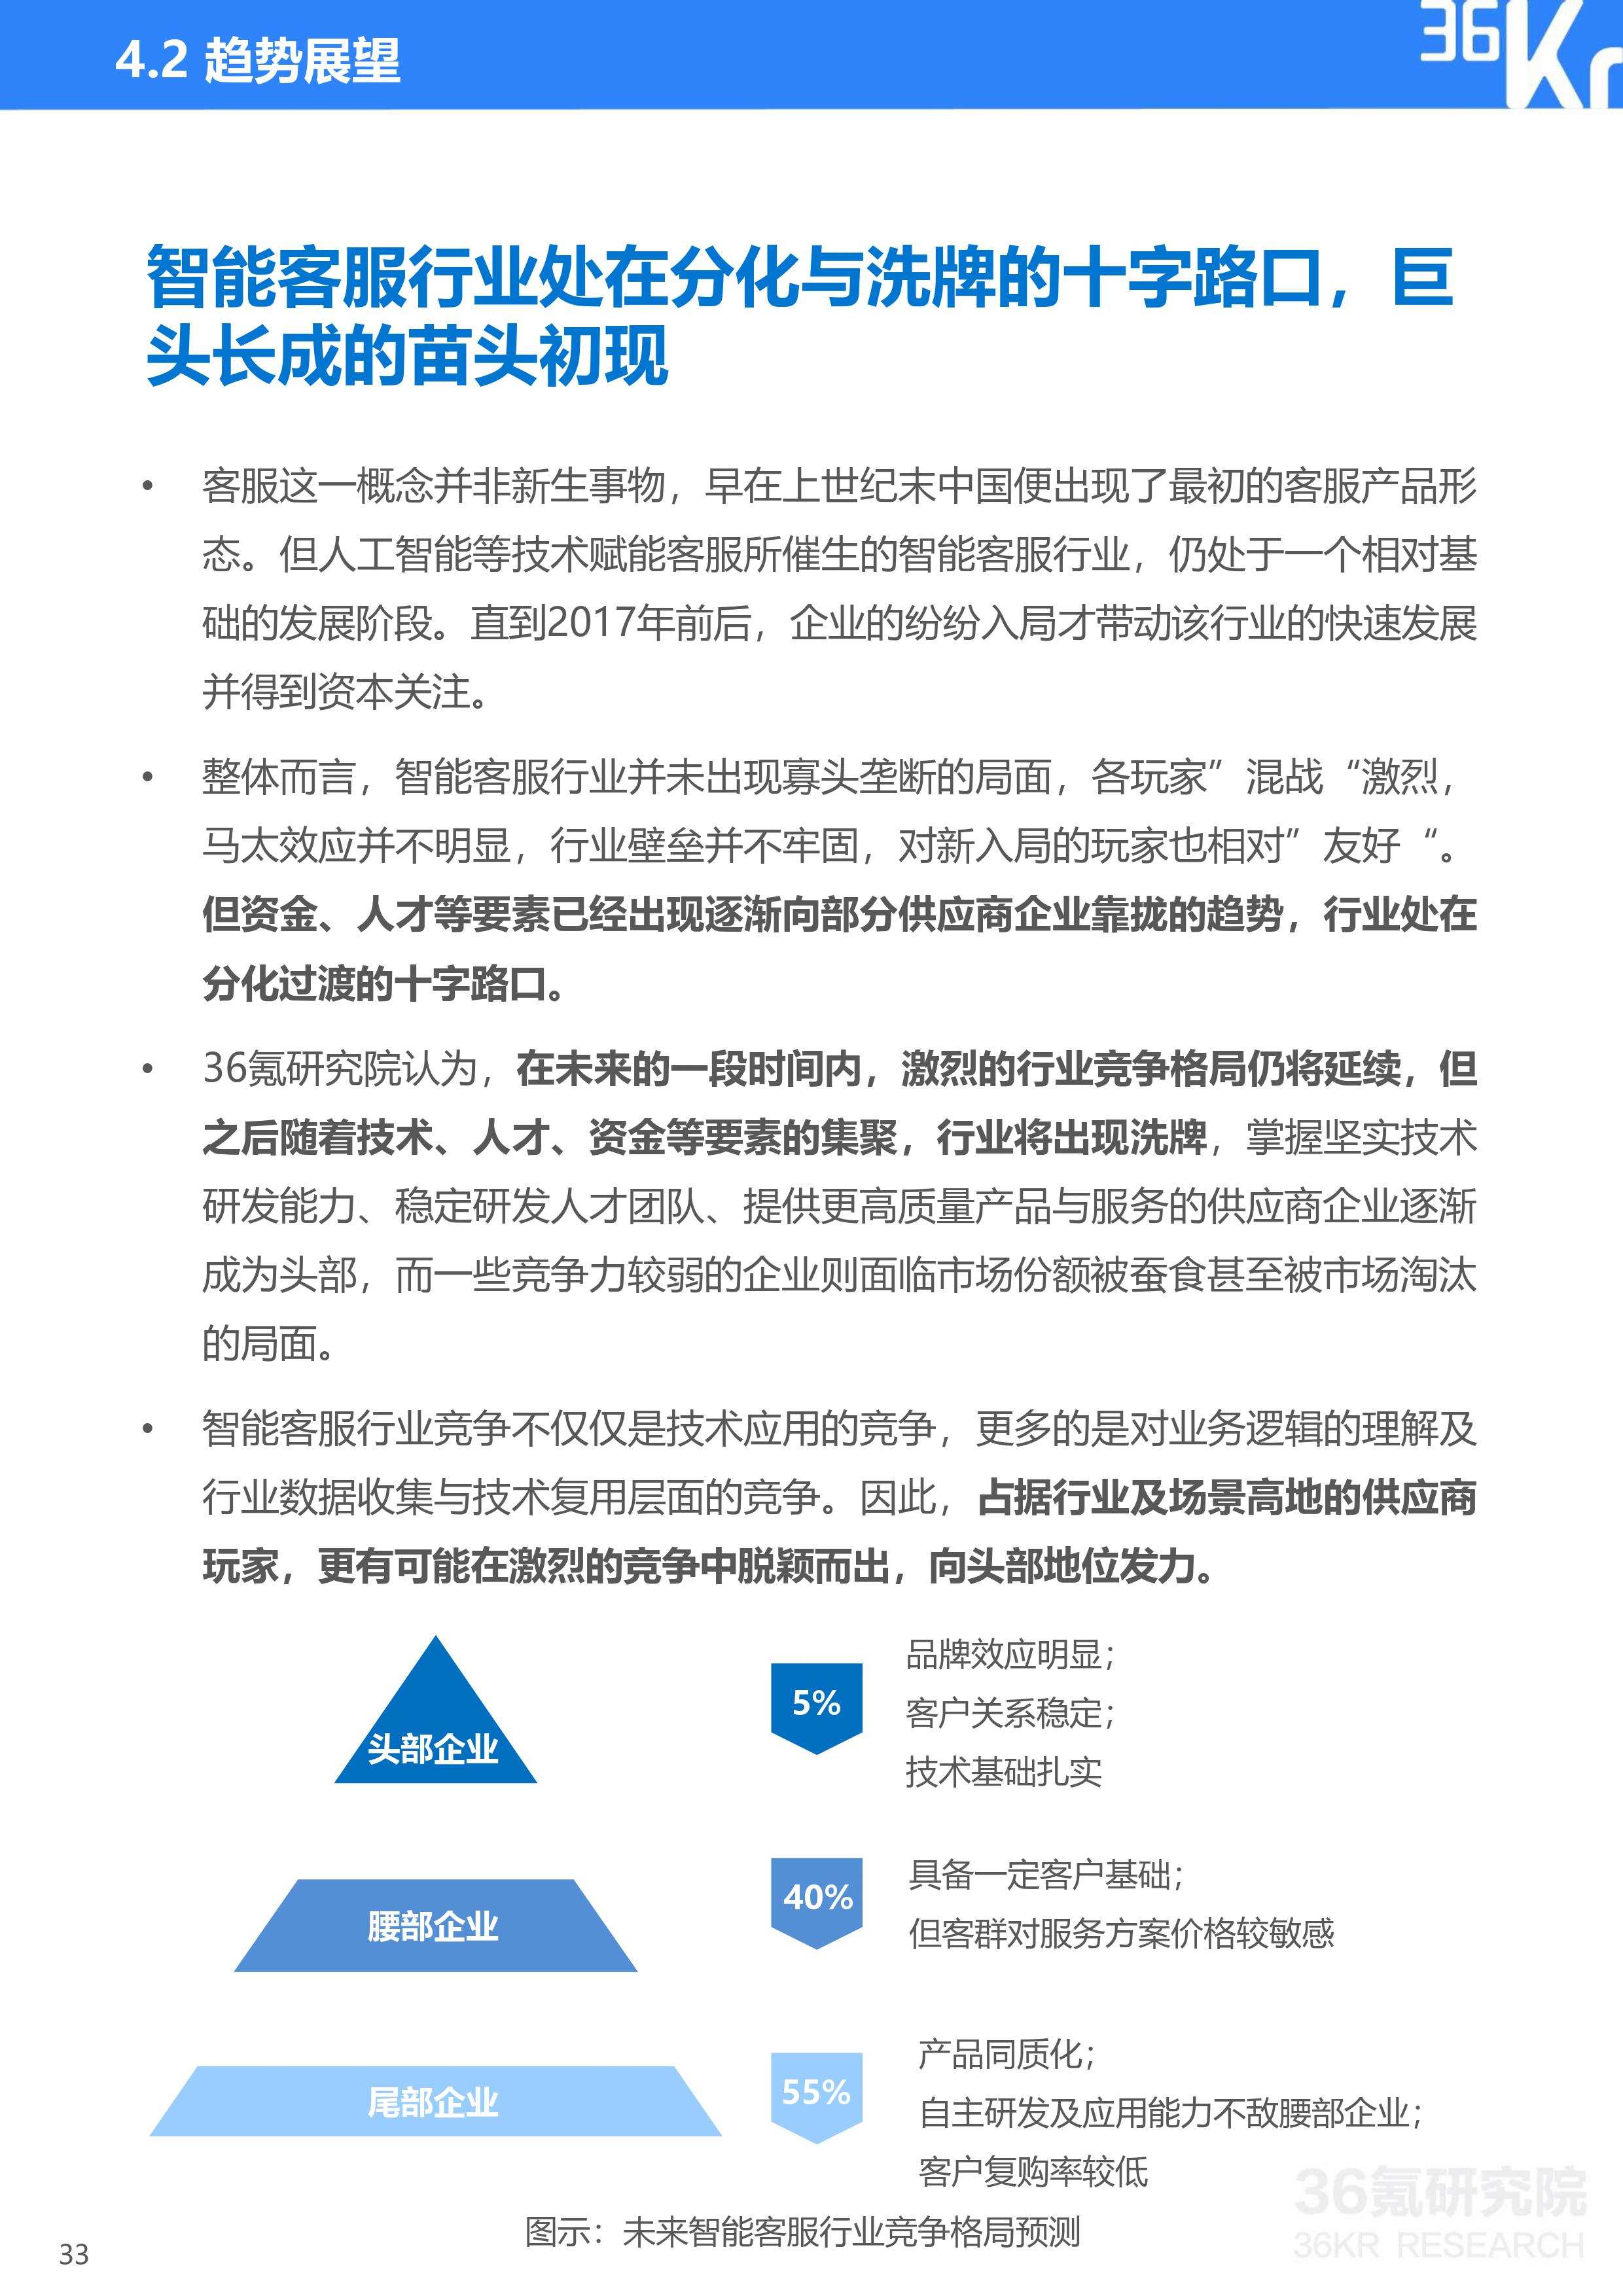 36氪研究院 | 2020年中国智能客服行业研究报告